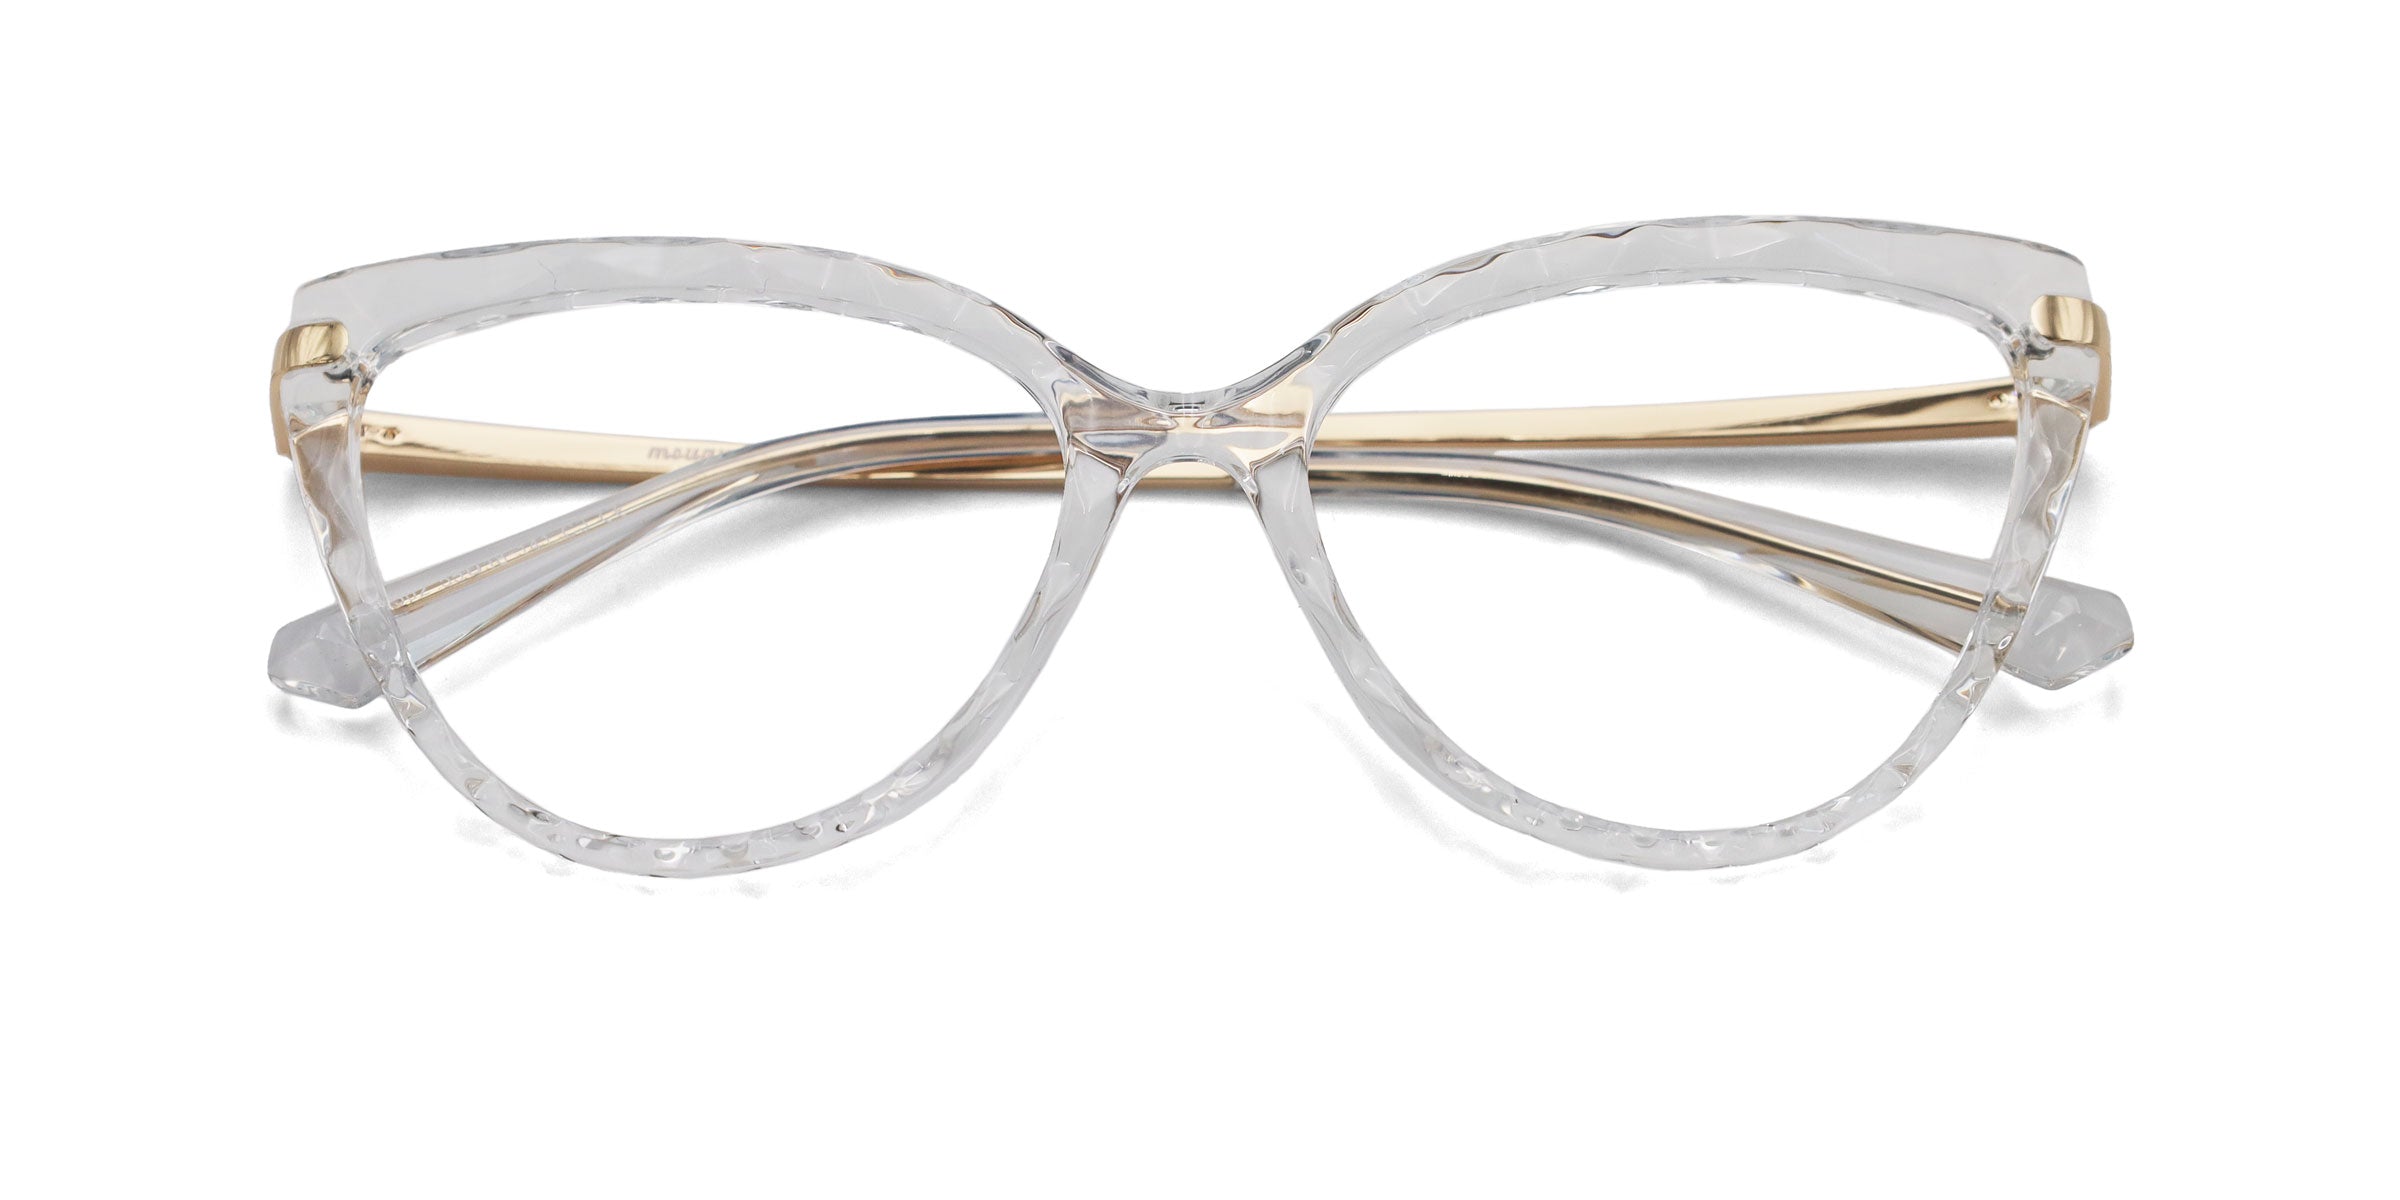 Kottdo Women Cat Eye Eyeglasses Frame Men Glasses Kt2360 – FuzWeb